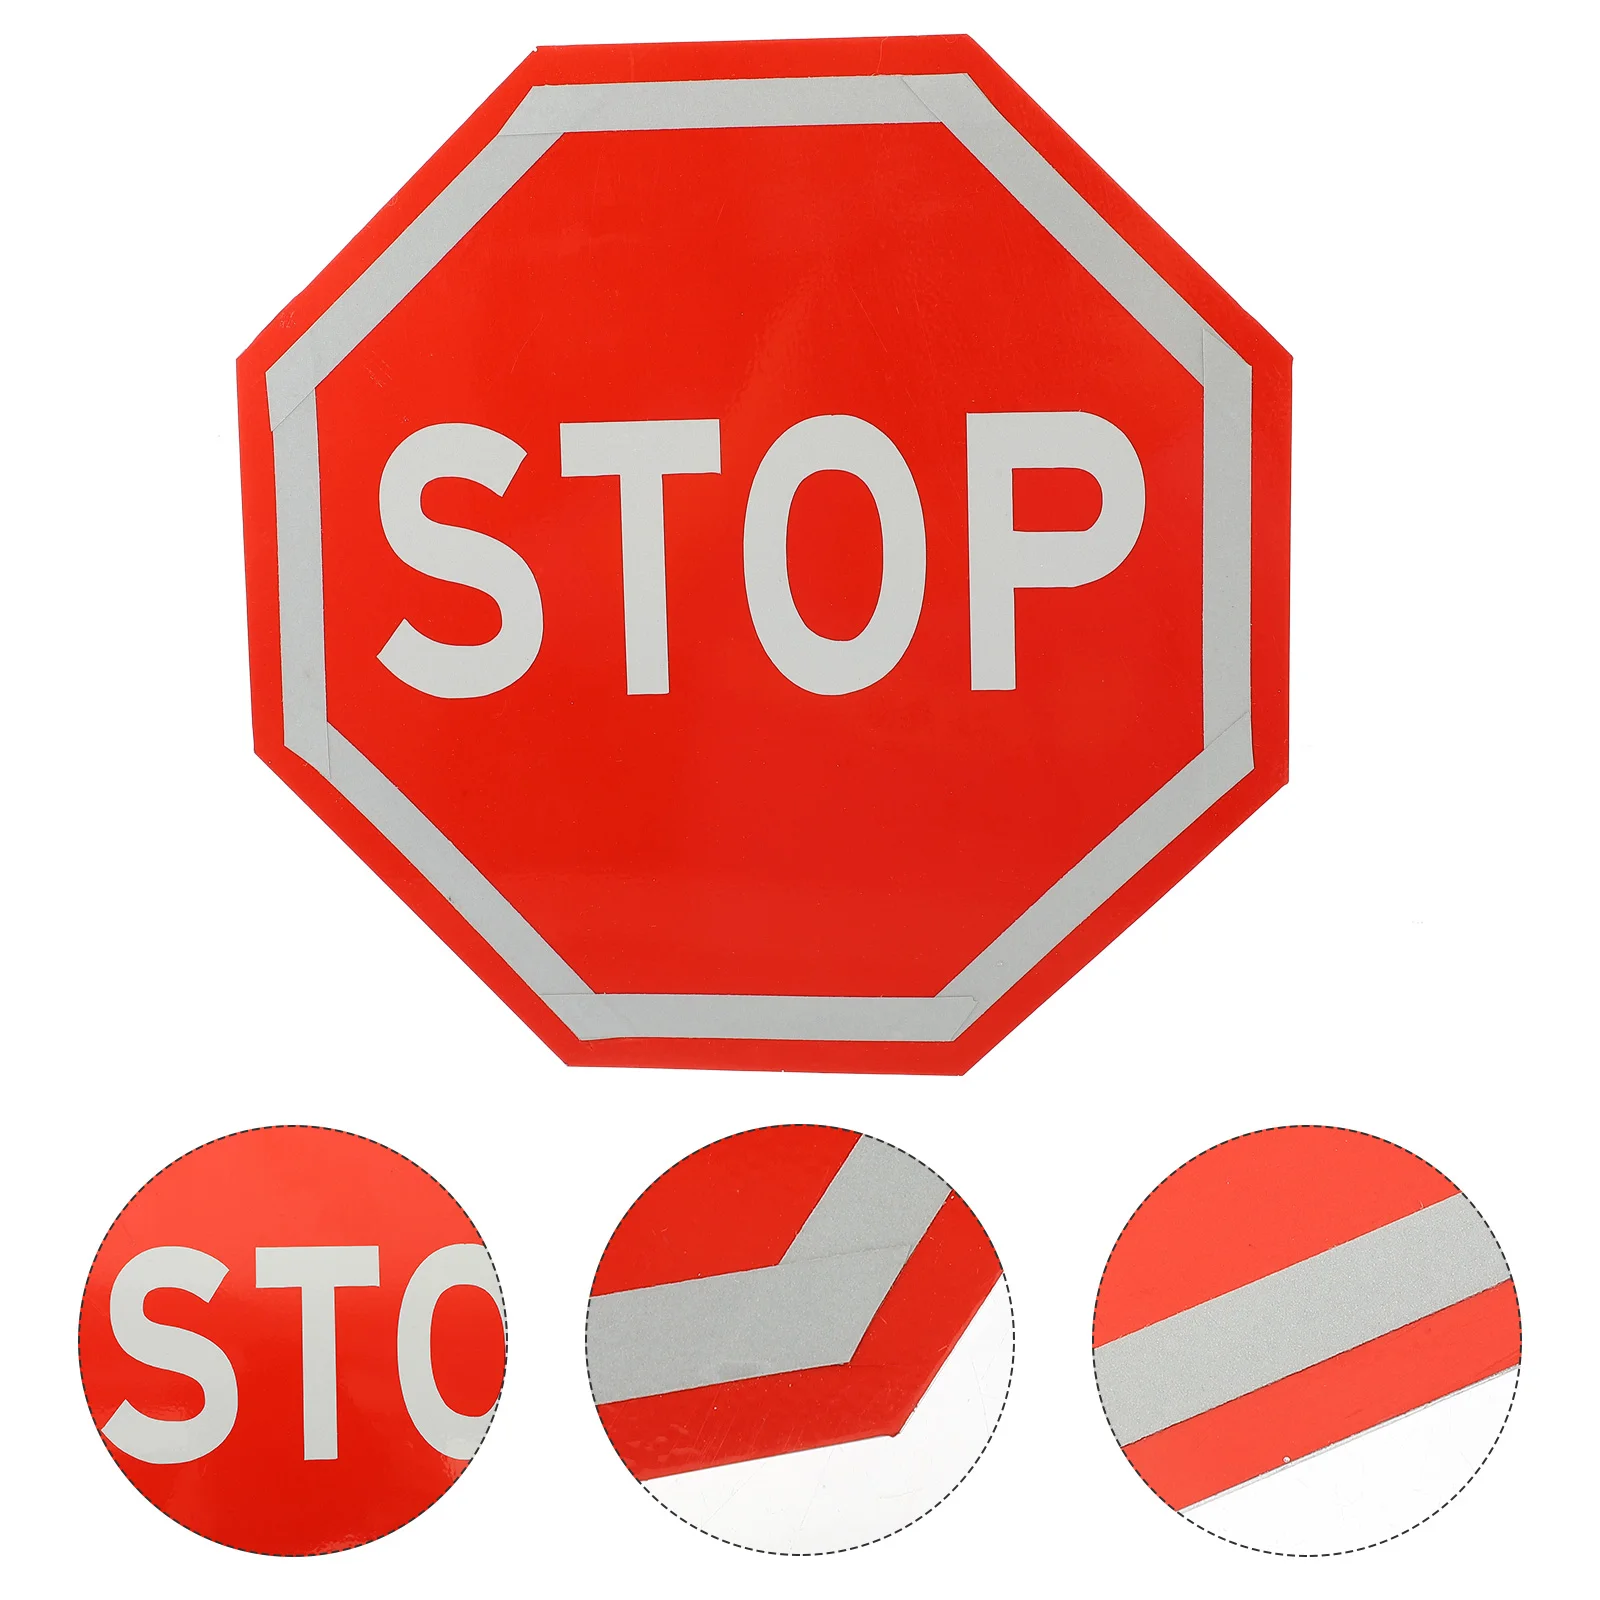 

Предупреждающий знак для остановки дорожного движения